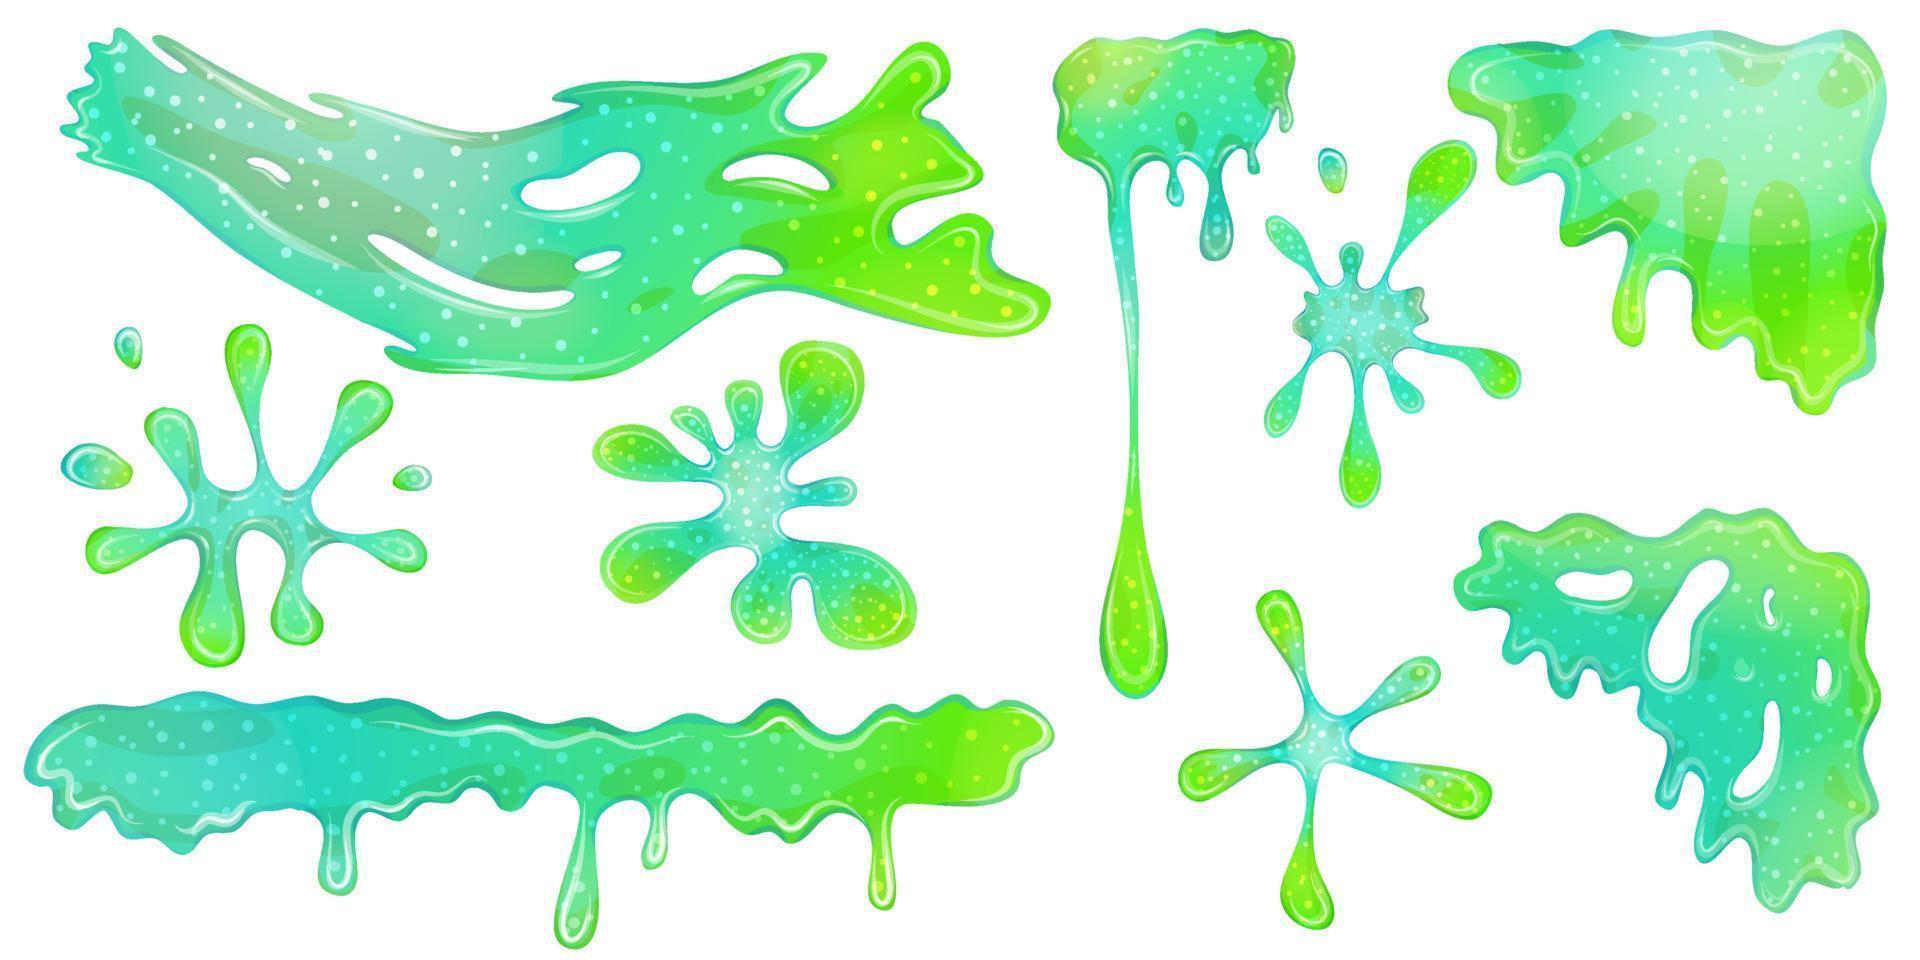 druipende groene goo slimes geïsoleerd in set. slimes zijn hoek en plons, stroom van muscus. groene kleurrijke gelei om te spelen. cartoon vectorillustratie. vector